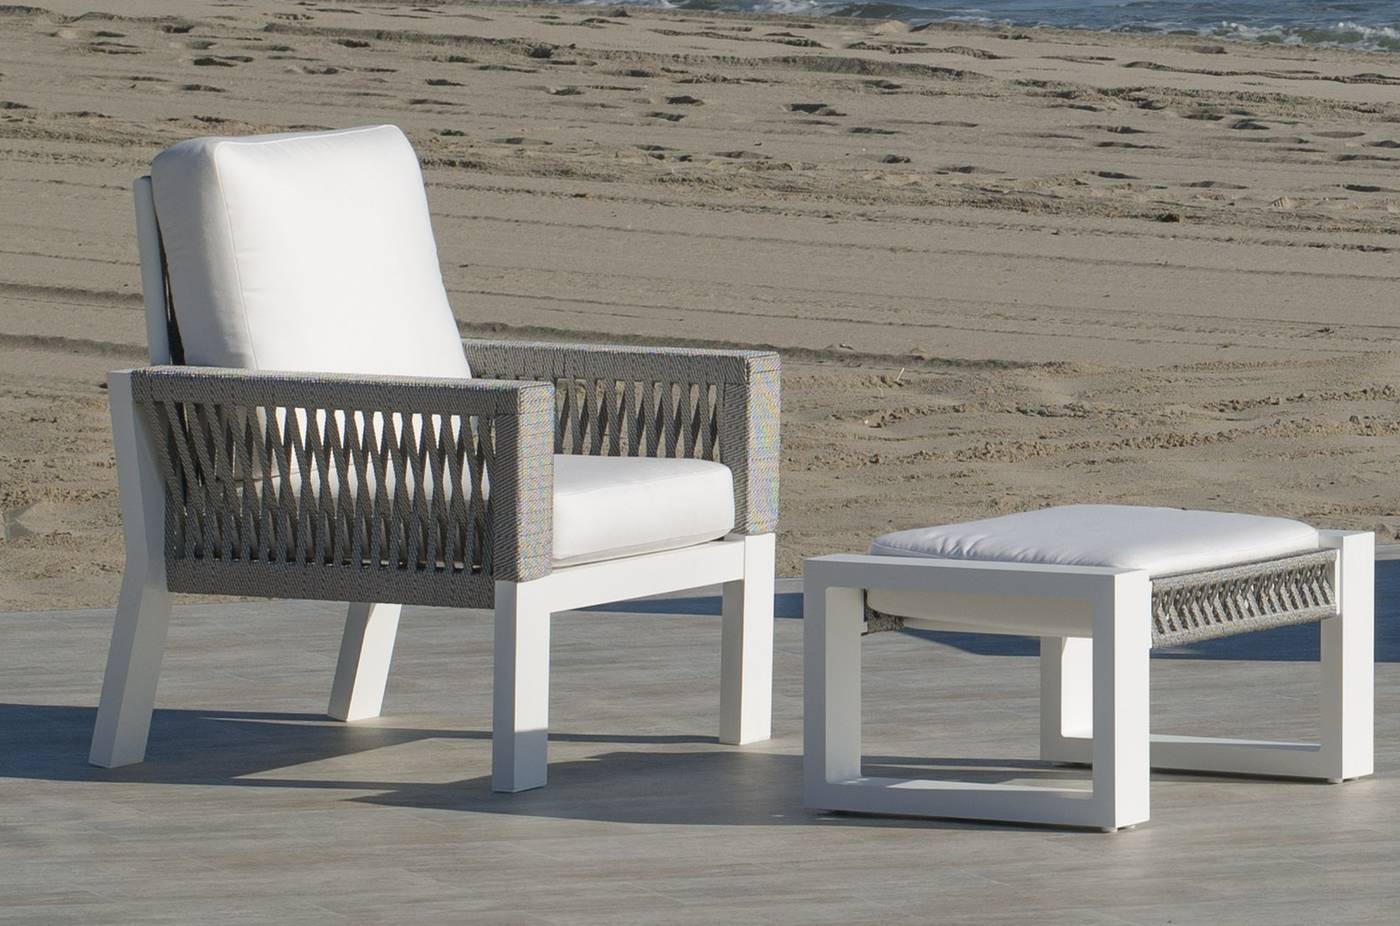 Set Aluminio Estambul-8 - Conjunto aluminio: 1 sofá de 3 plazas + 2 sillones + 1 mesa de centro. Disponible en color blanco, gris, marrón o champagne.